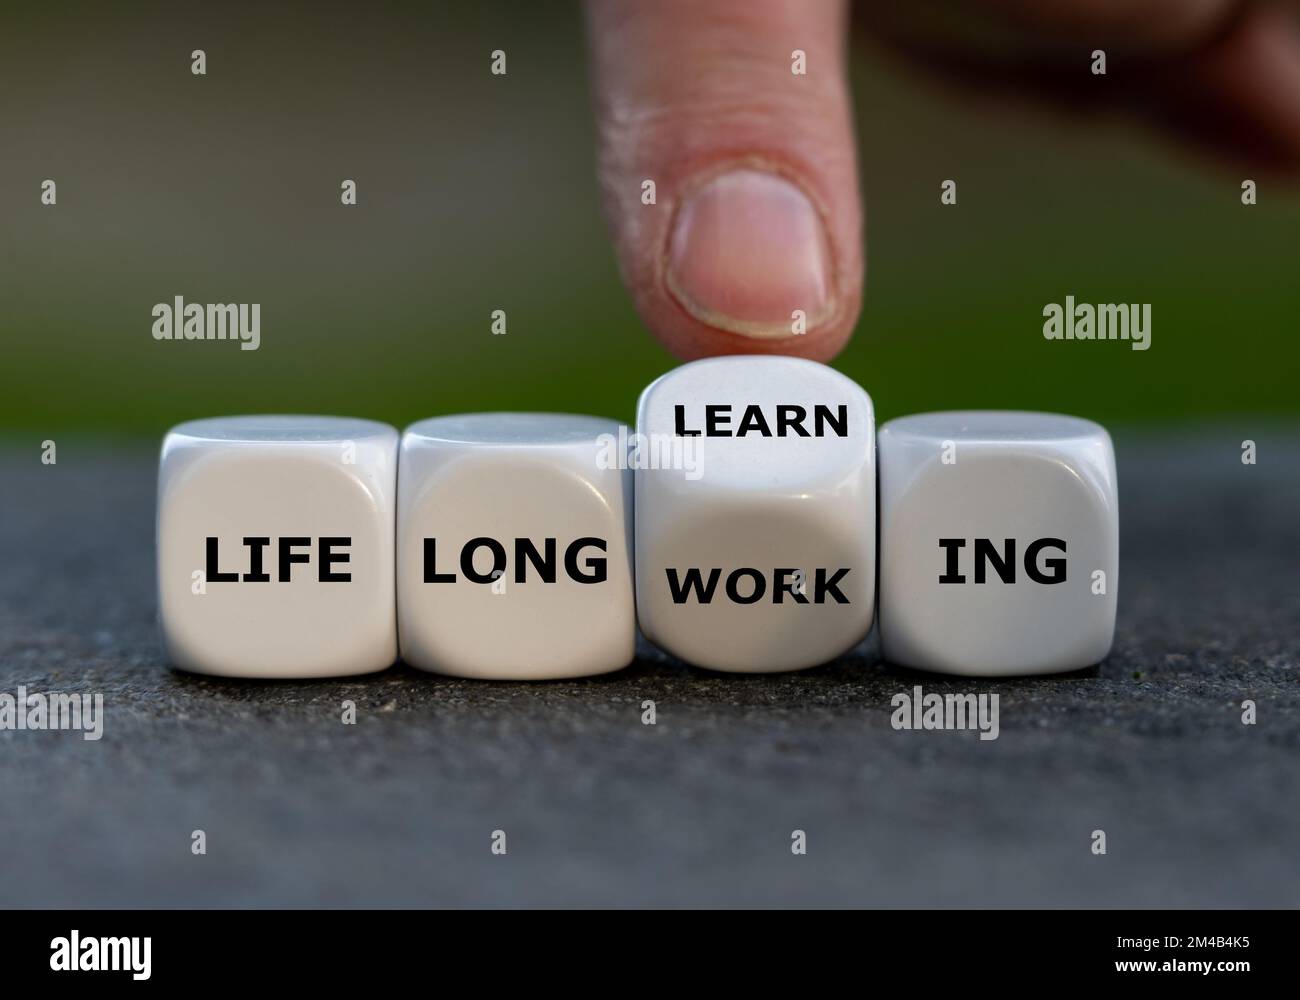 La mano gira i dadi e cambia l'espressione "lavoro lungo la vita" in "apprendimento lungo la vita". Foto Stock